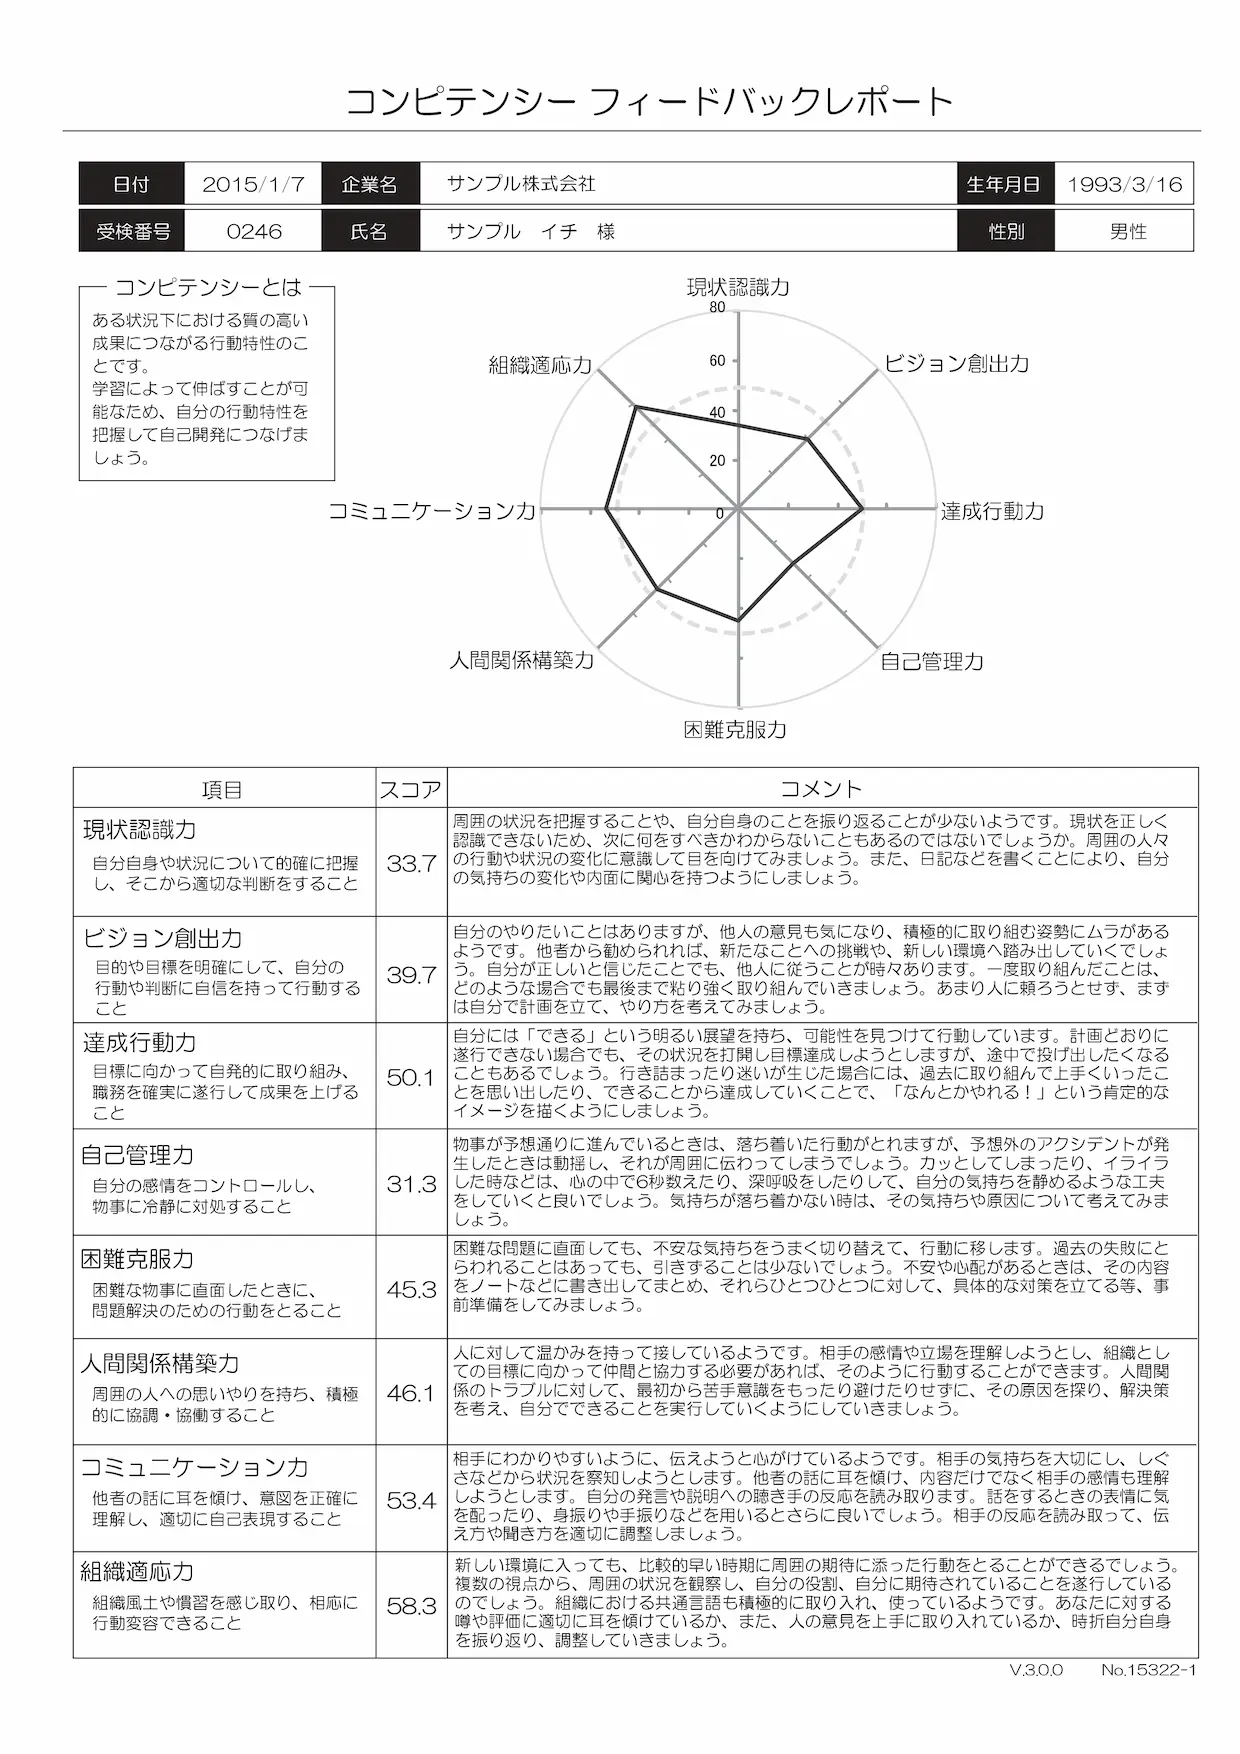 【オプション】コンピテンシーフィードバックレポート